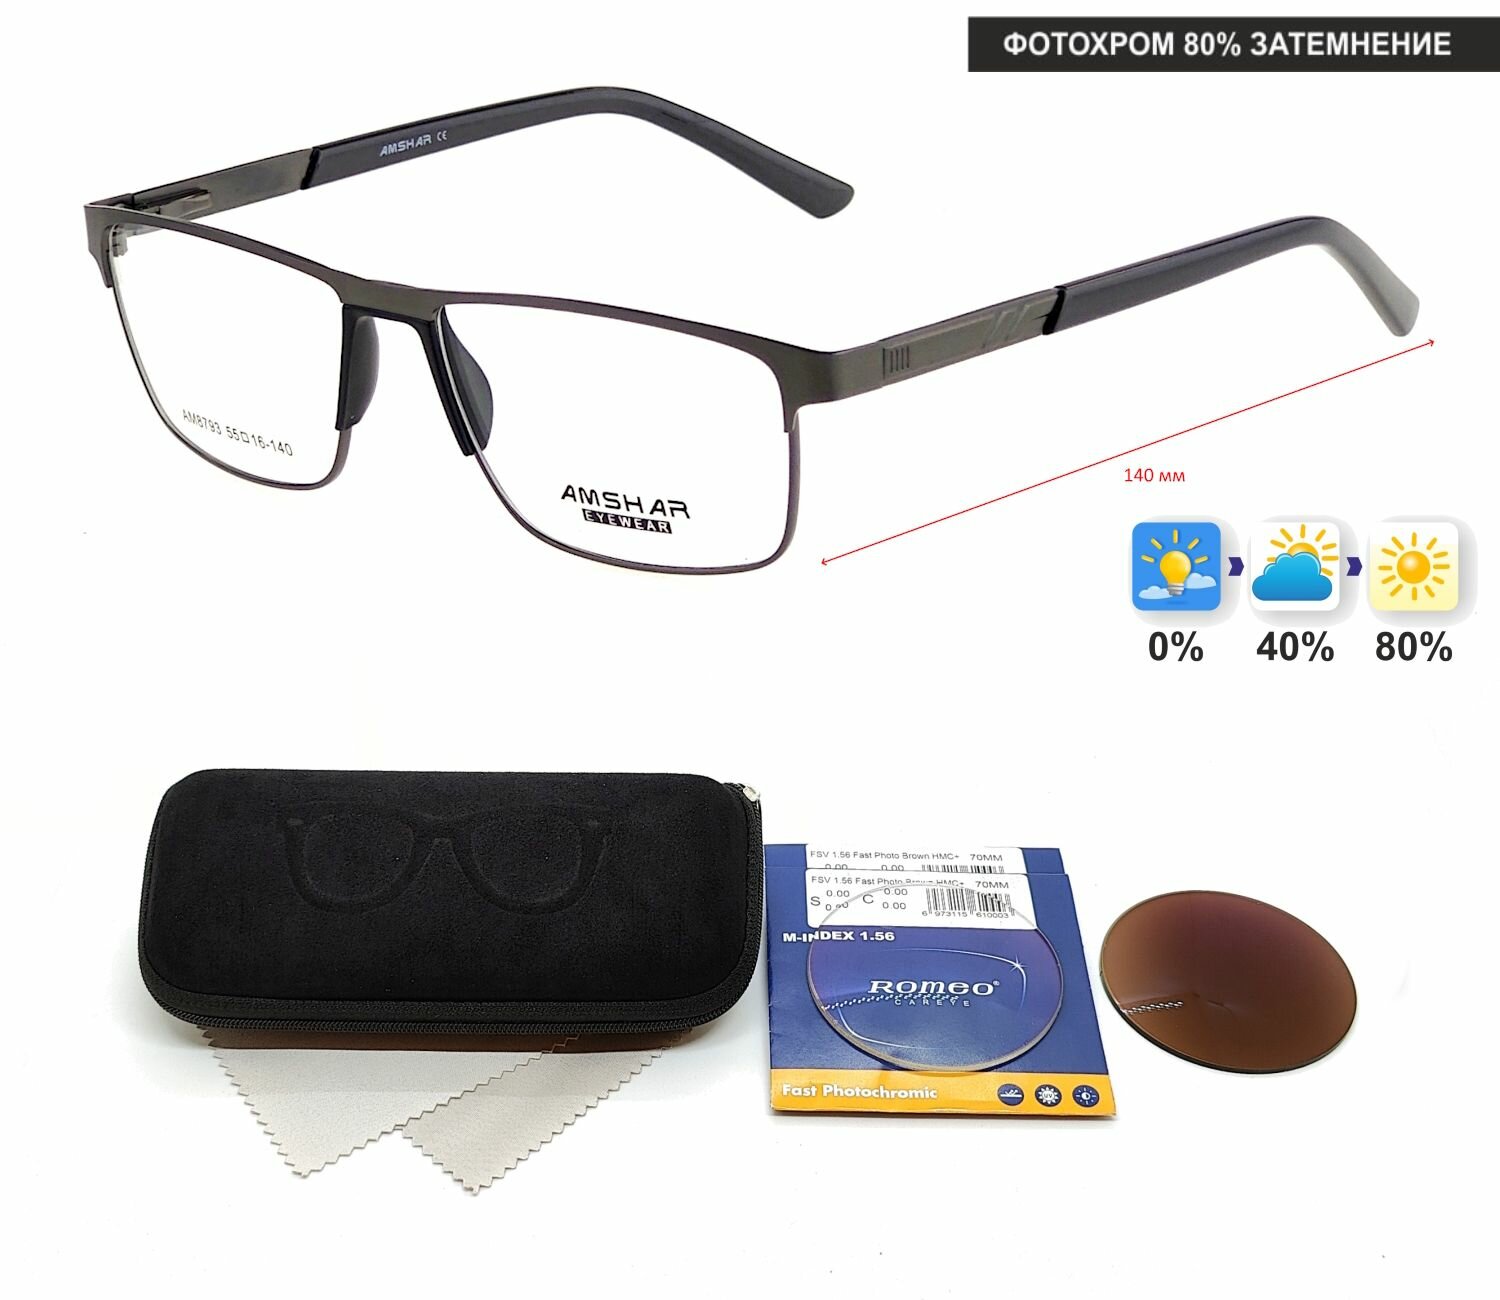 Фотохромные очки с футляром-змейка AMSHAR мод. 8793 Цвет 3 с линзами ROMEO 1.56 FAST Photocolor BROWN, HMC+ -3.00 РЦ 64-66